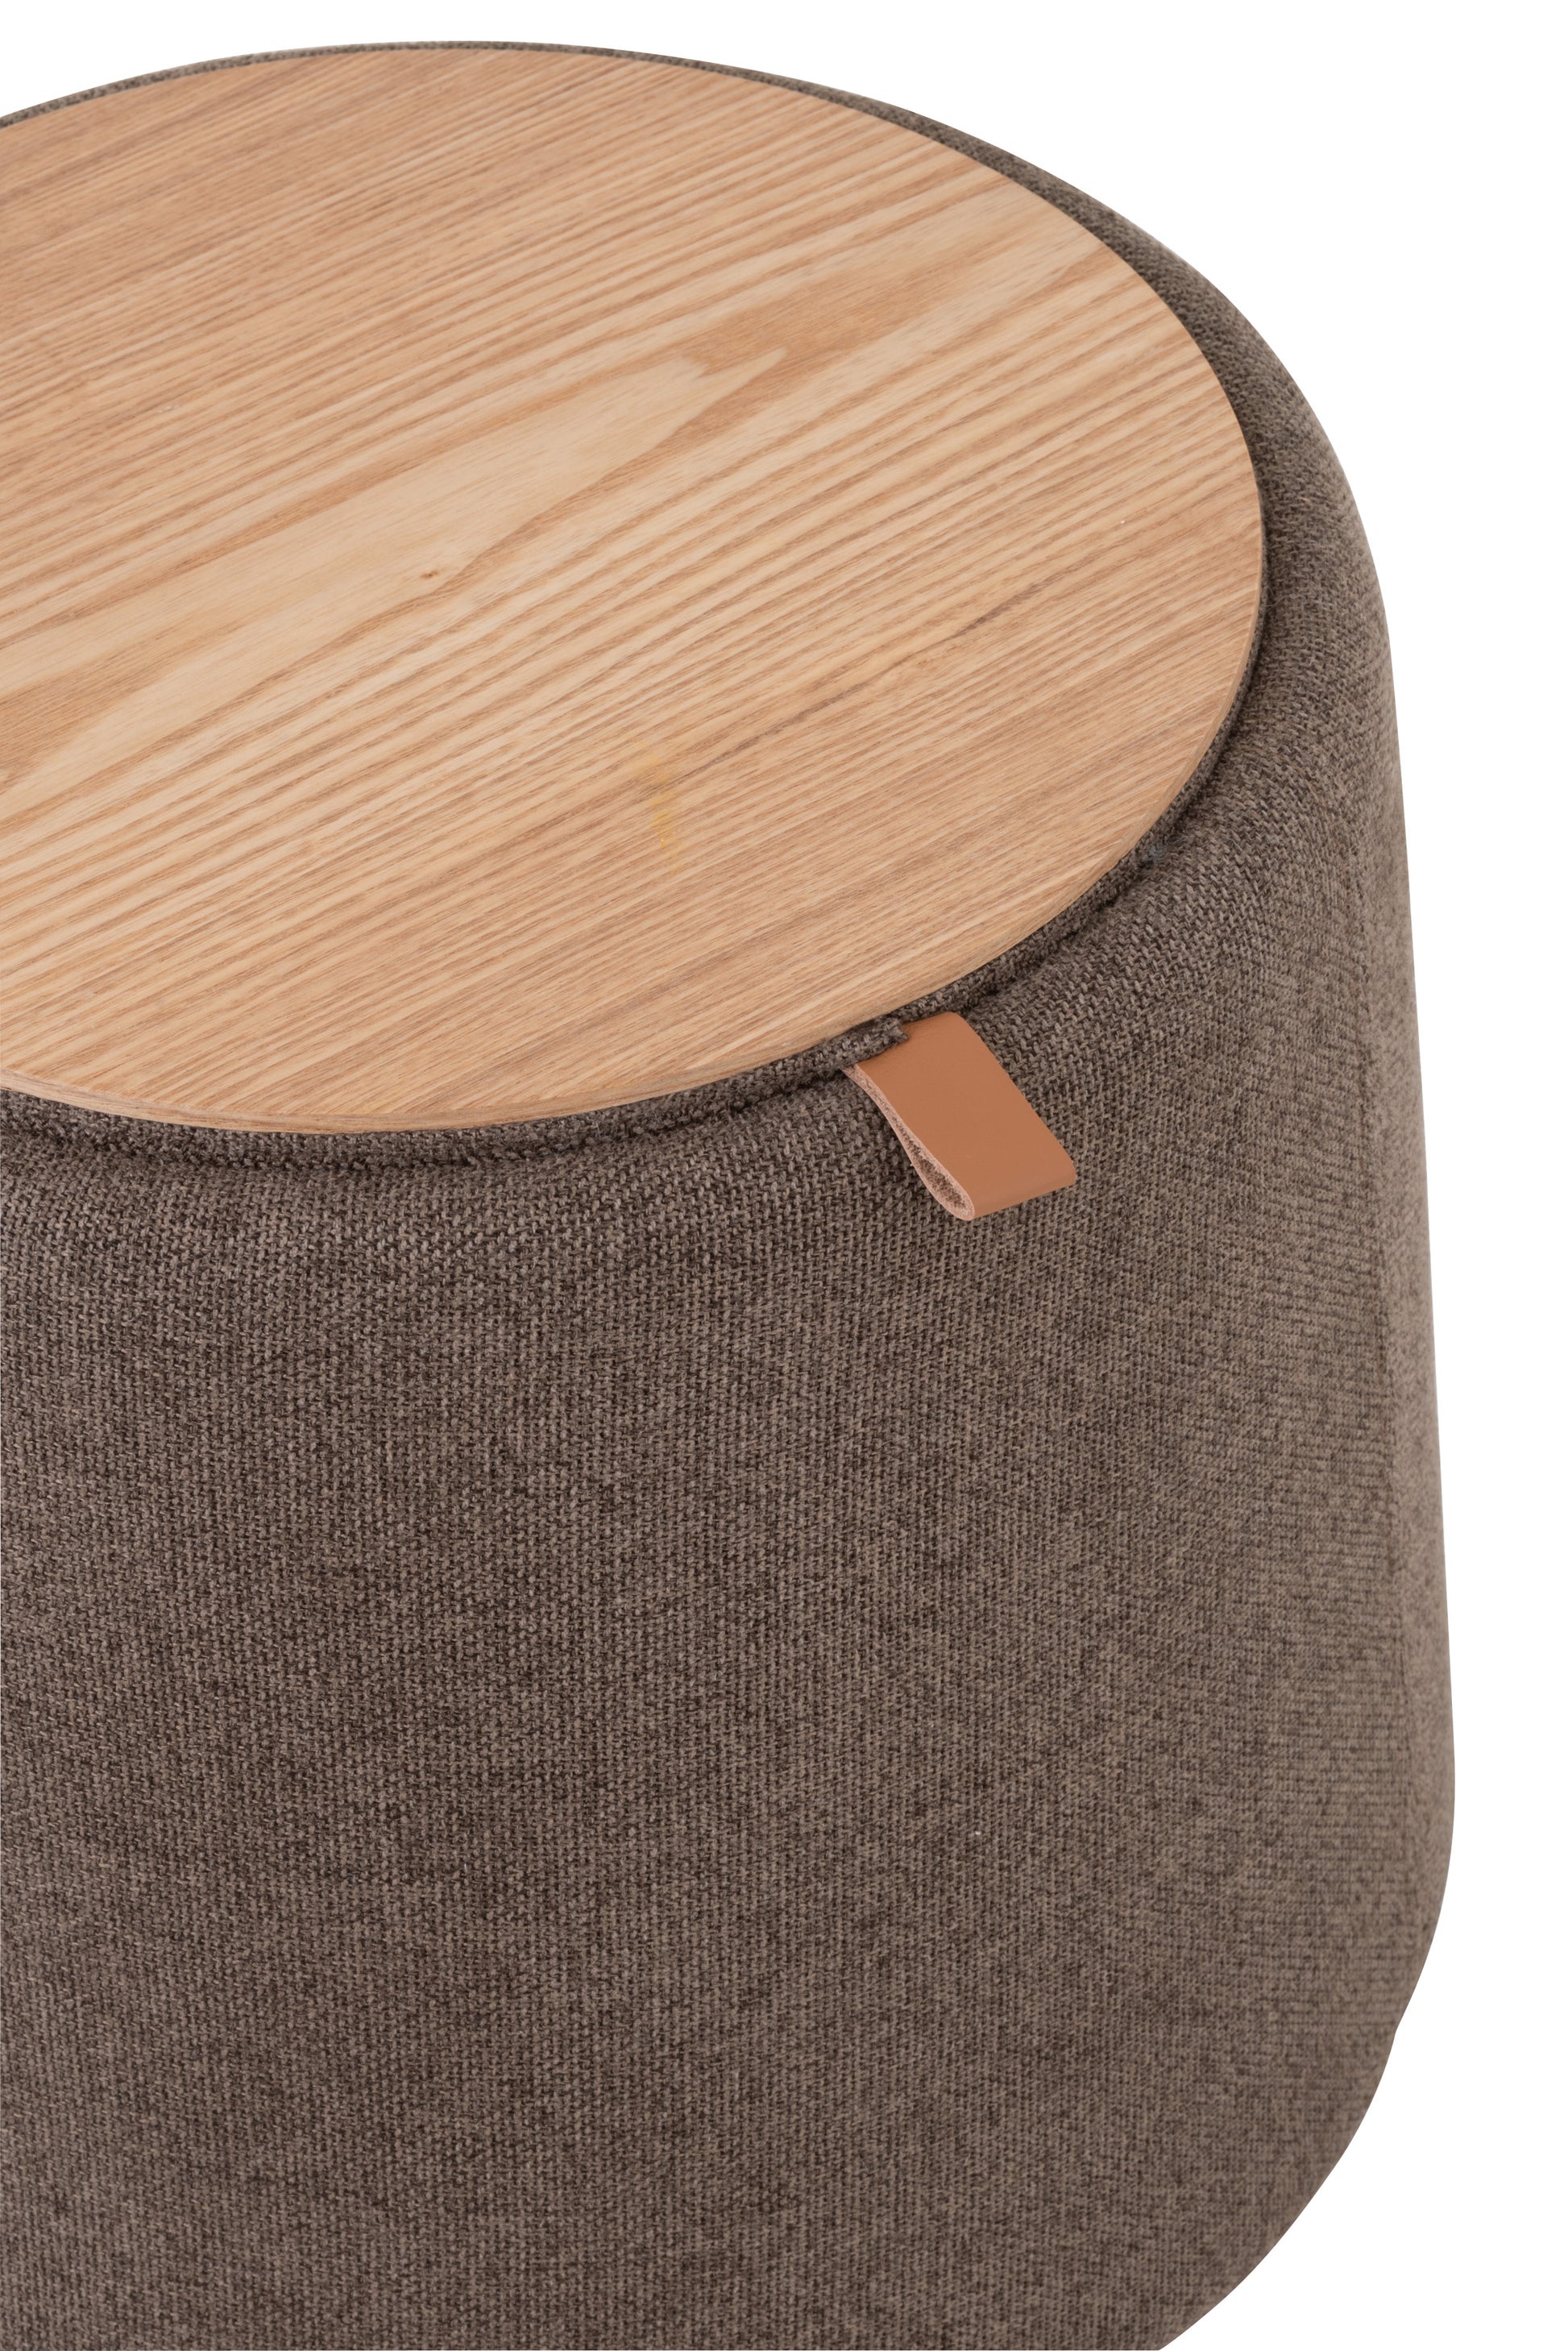 Trend relais vooroordeel Pouf/Side table Rnd Textile/Wood Brown – Felika